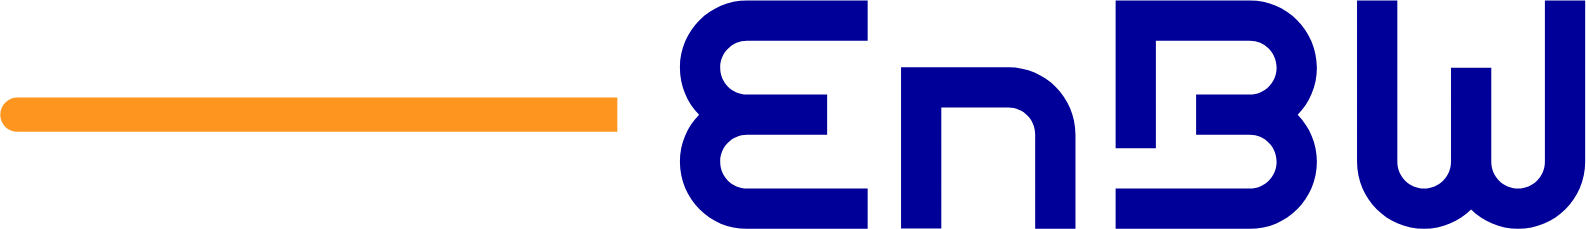 EnBW Energie logo large (transparent PNG)